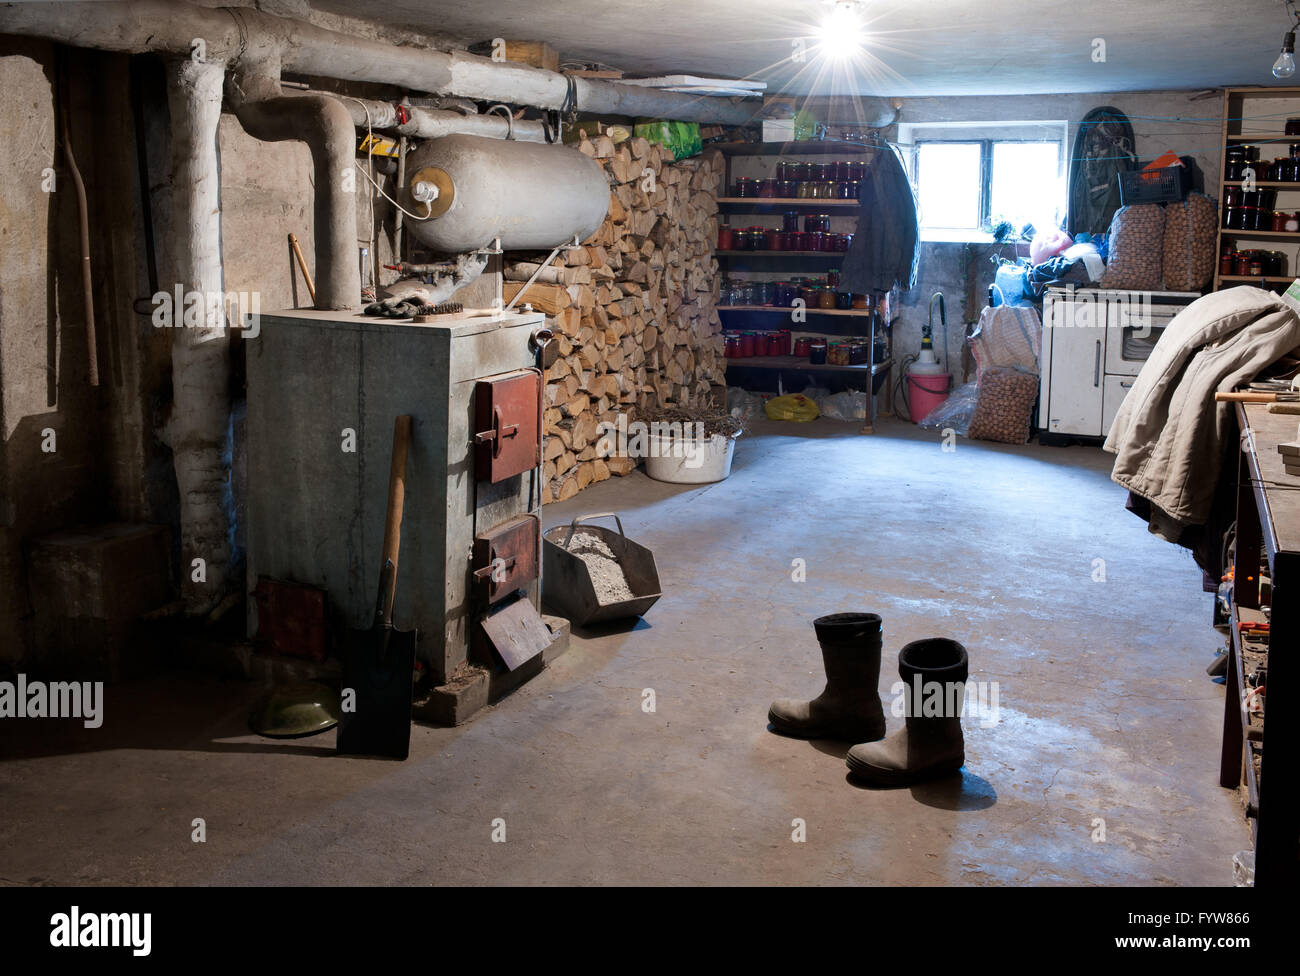 Dunklen Keller Innenraum mit Pantry in dem Land zu Hause, die  unterirdischen Kellerraum unter Bausystem, Haus Heizung indoor  Stockfotografie - Alamy